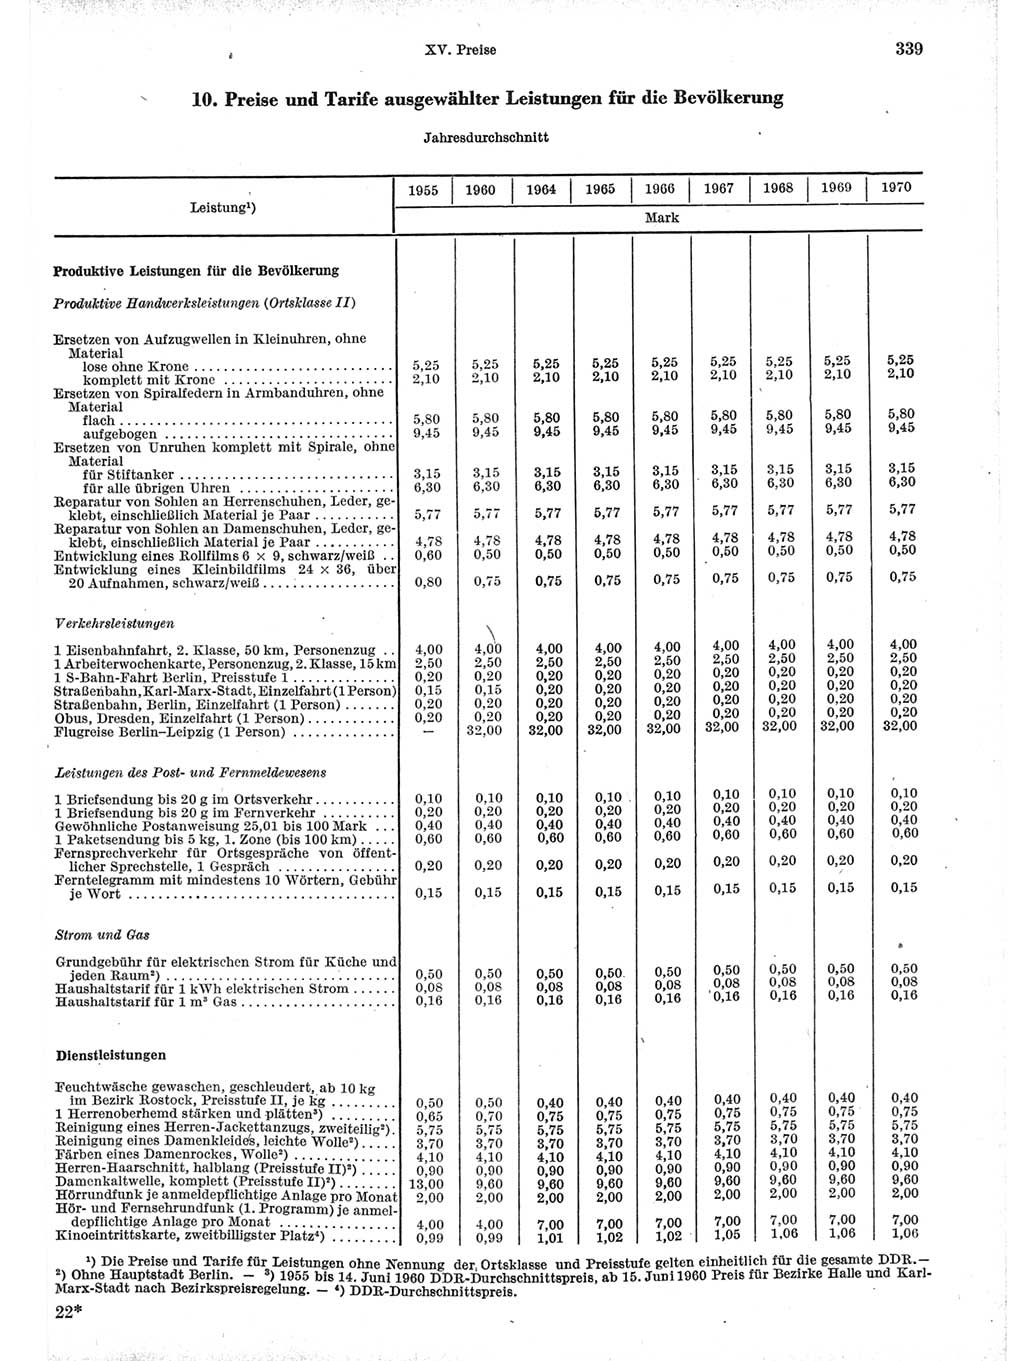 Statistisches Jahrbuch der Deutschen Demokratischen Republik (DDR) 1971, Seite 339 (Stat. Jb. DDR 1971, S. 339)